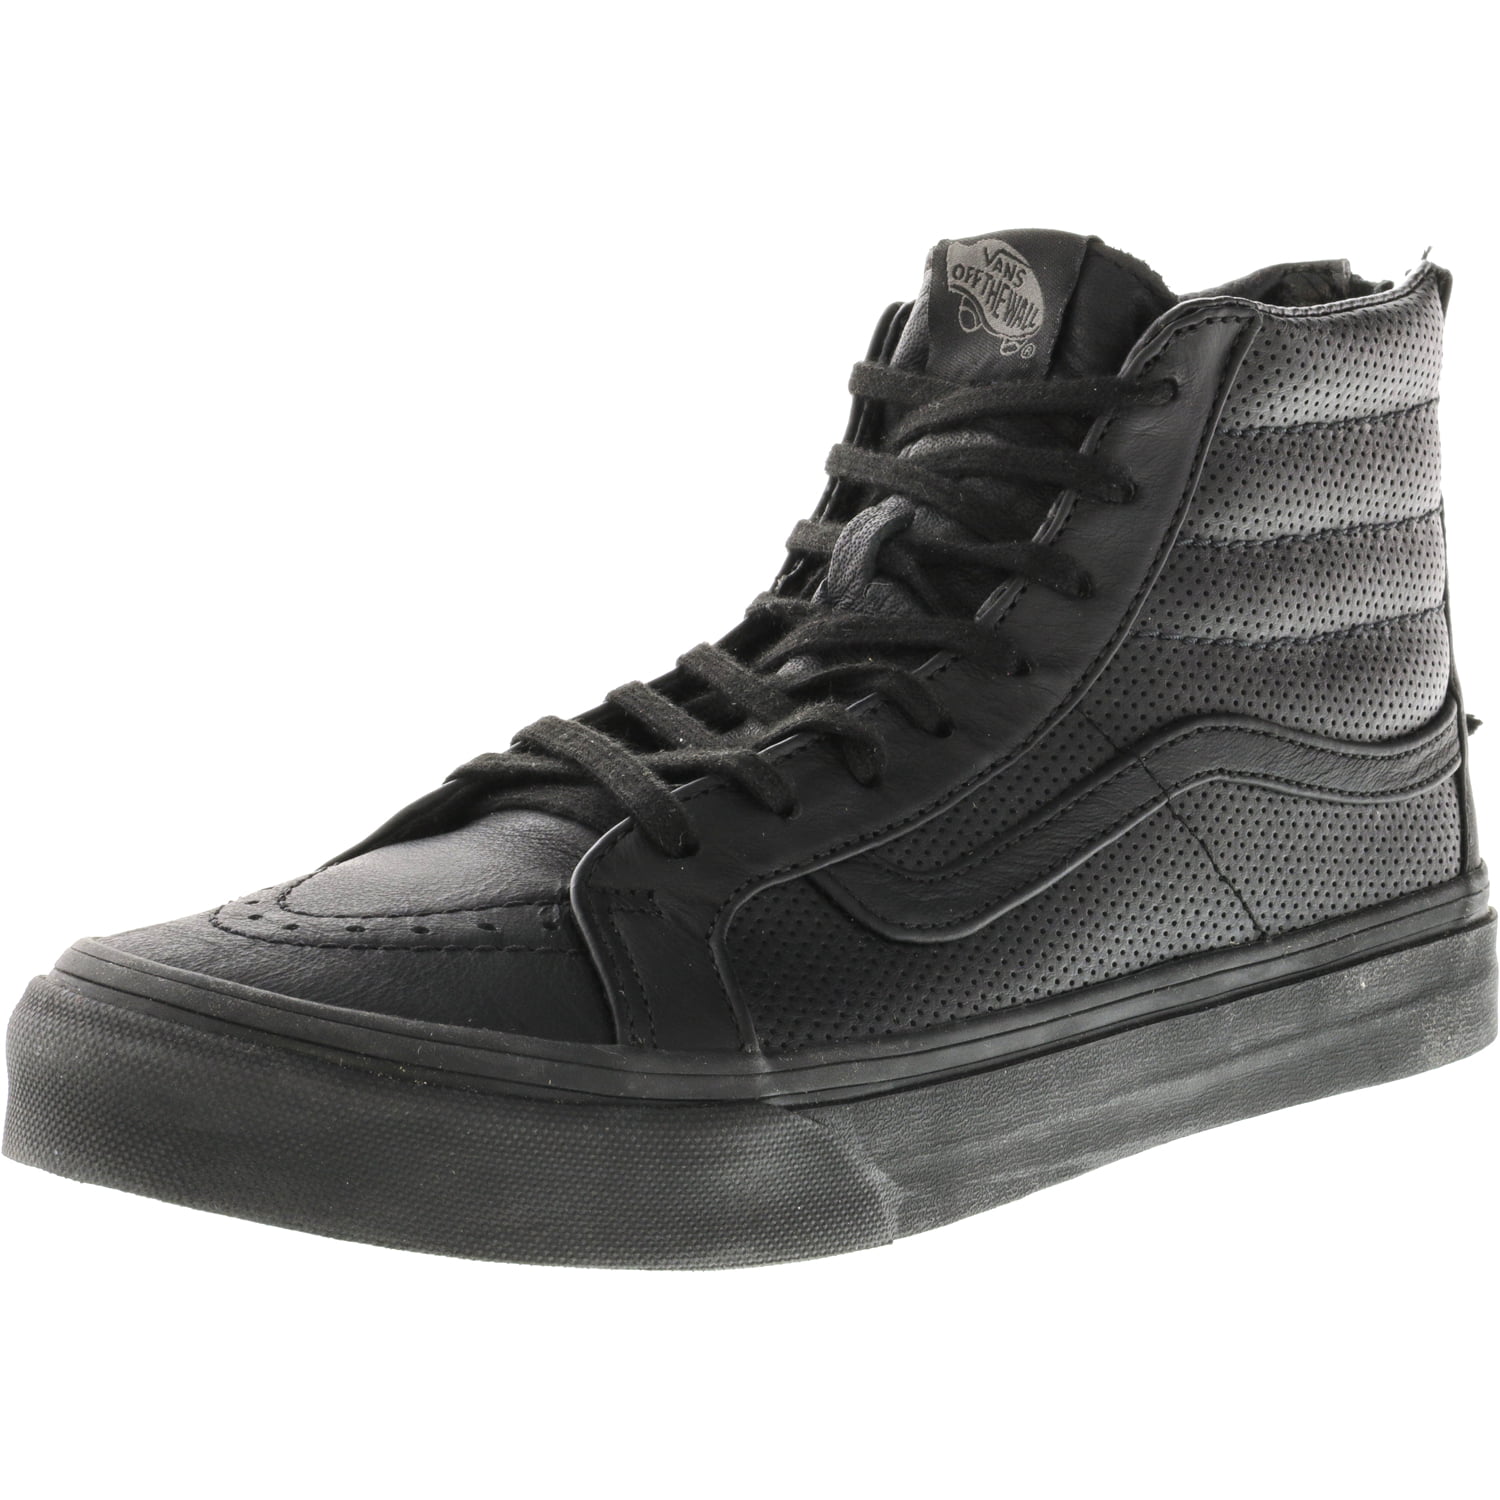 Indkøbscenter udmelding Lejlighedsvis Vans Sk8-Hi Slim Zip Perforated Leather Black / High-Top Skateboarding Shoe  - 8M 6.5M - Walmart.com